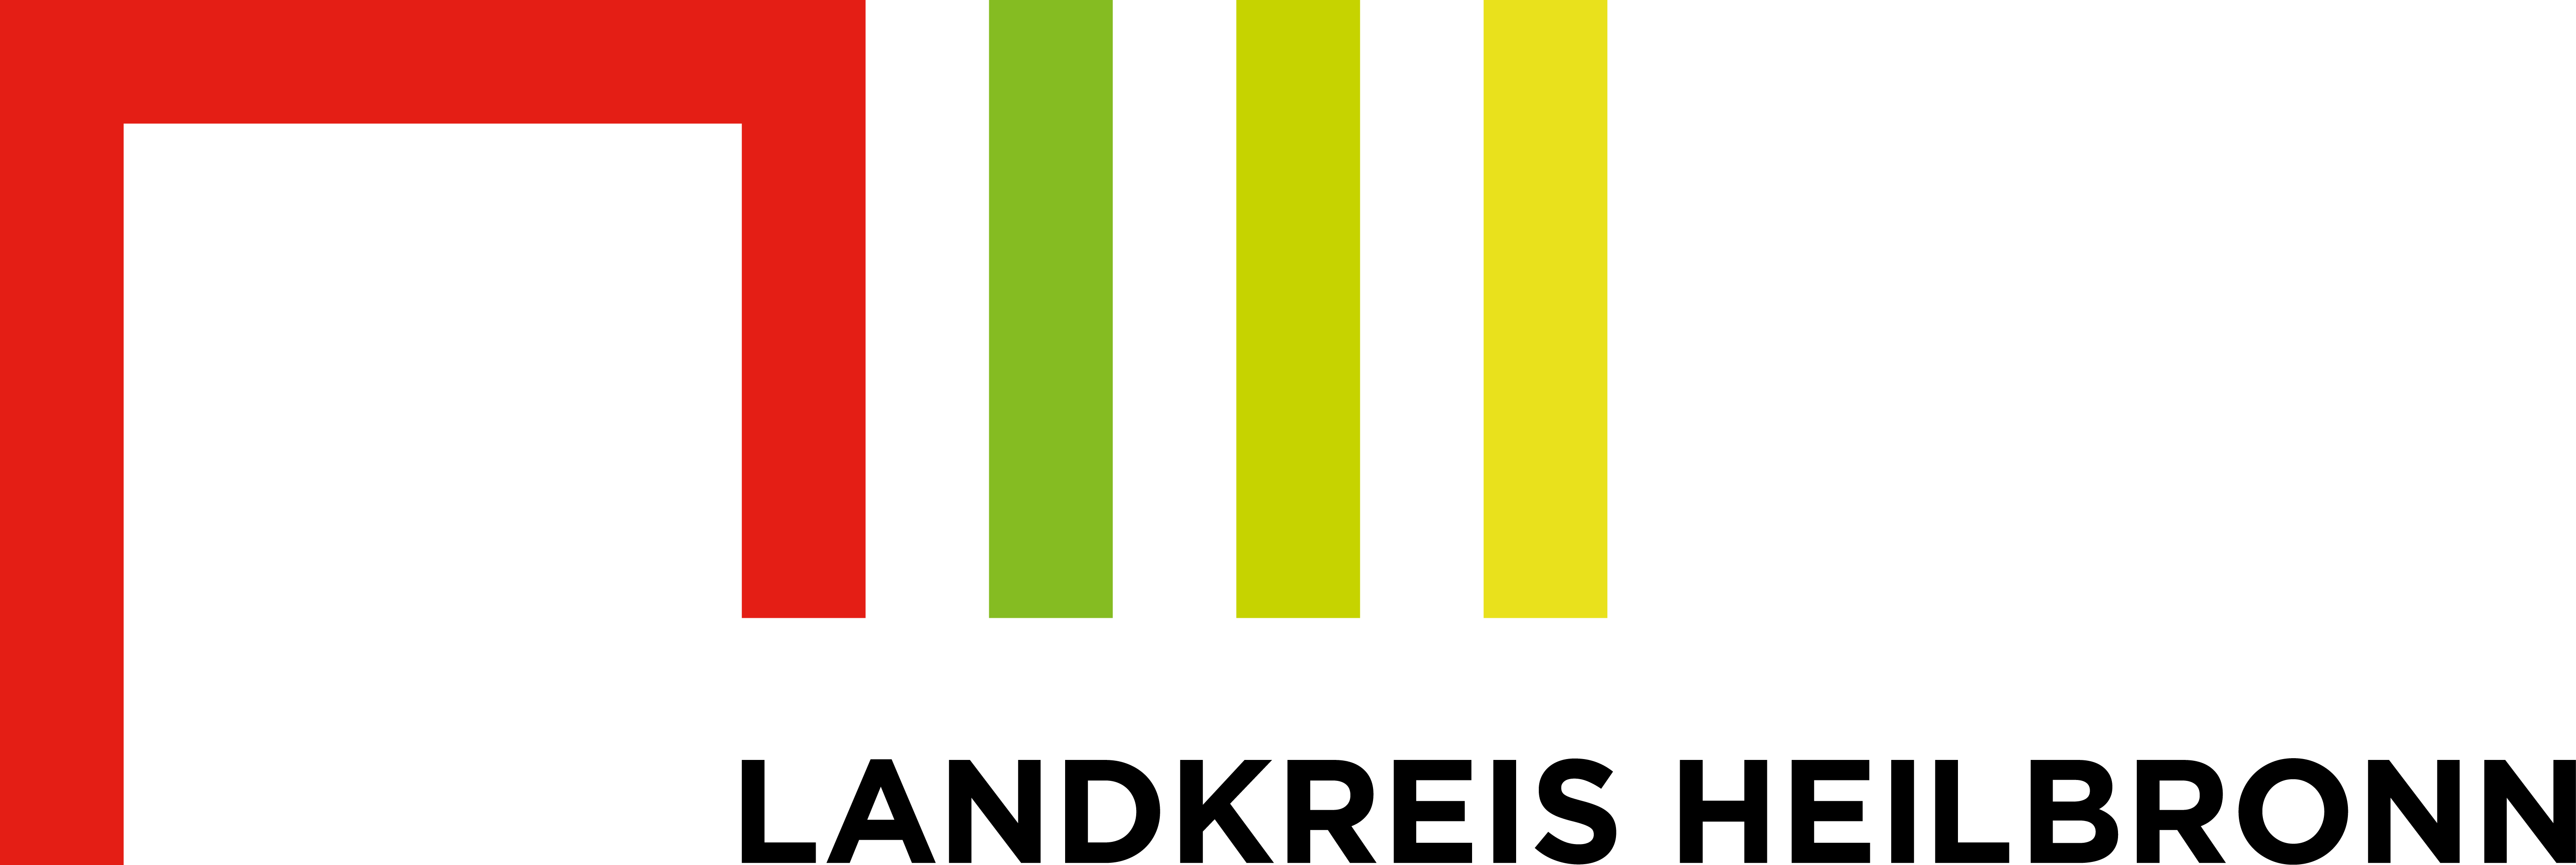 logo_landkreis_heilbronn_rgb_pos.jpg